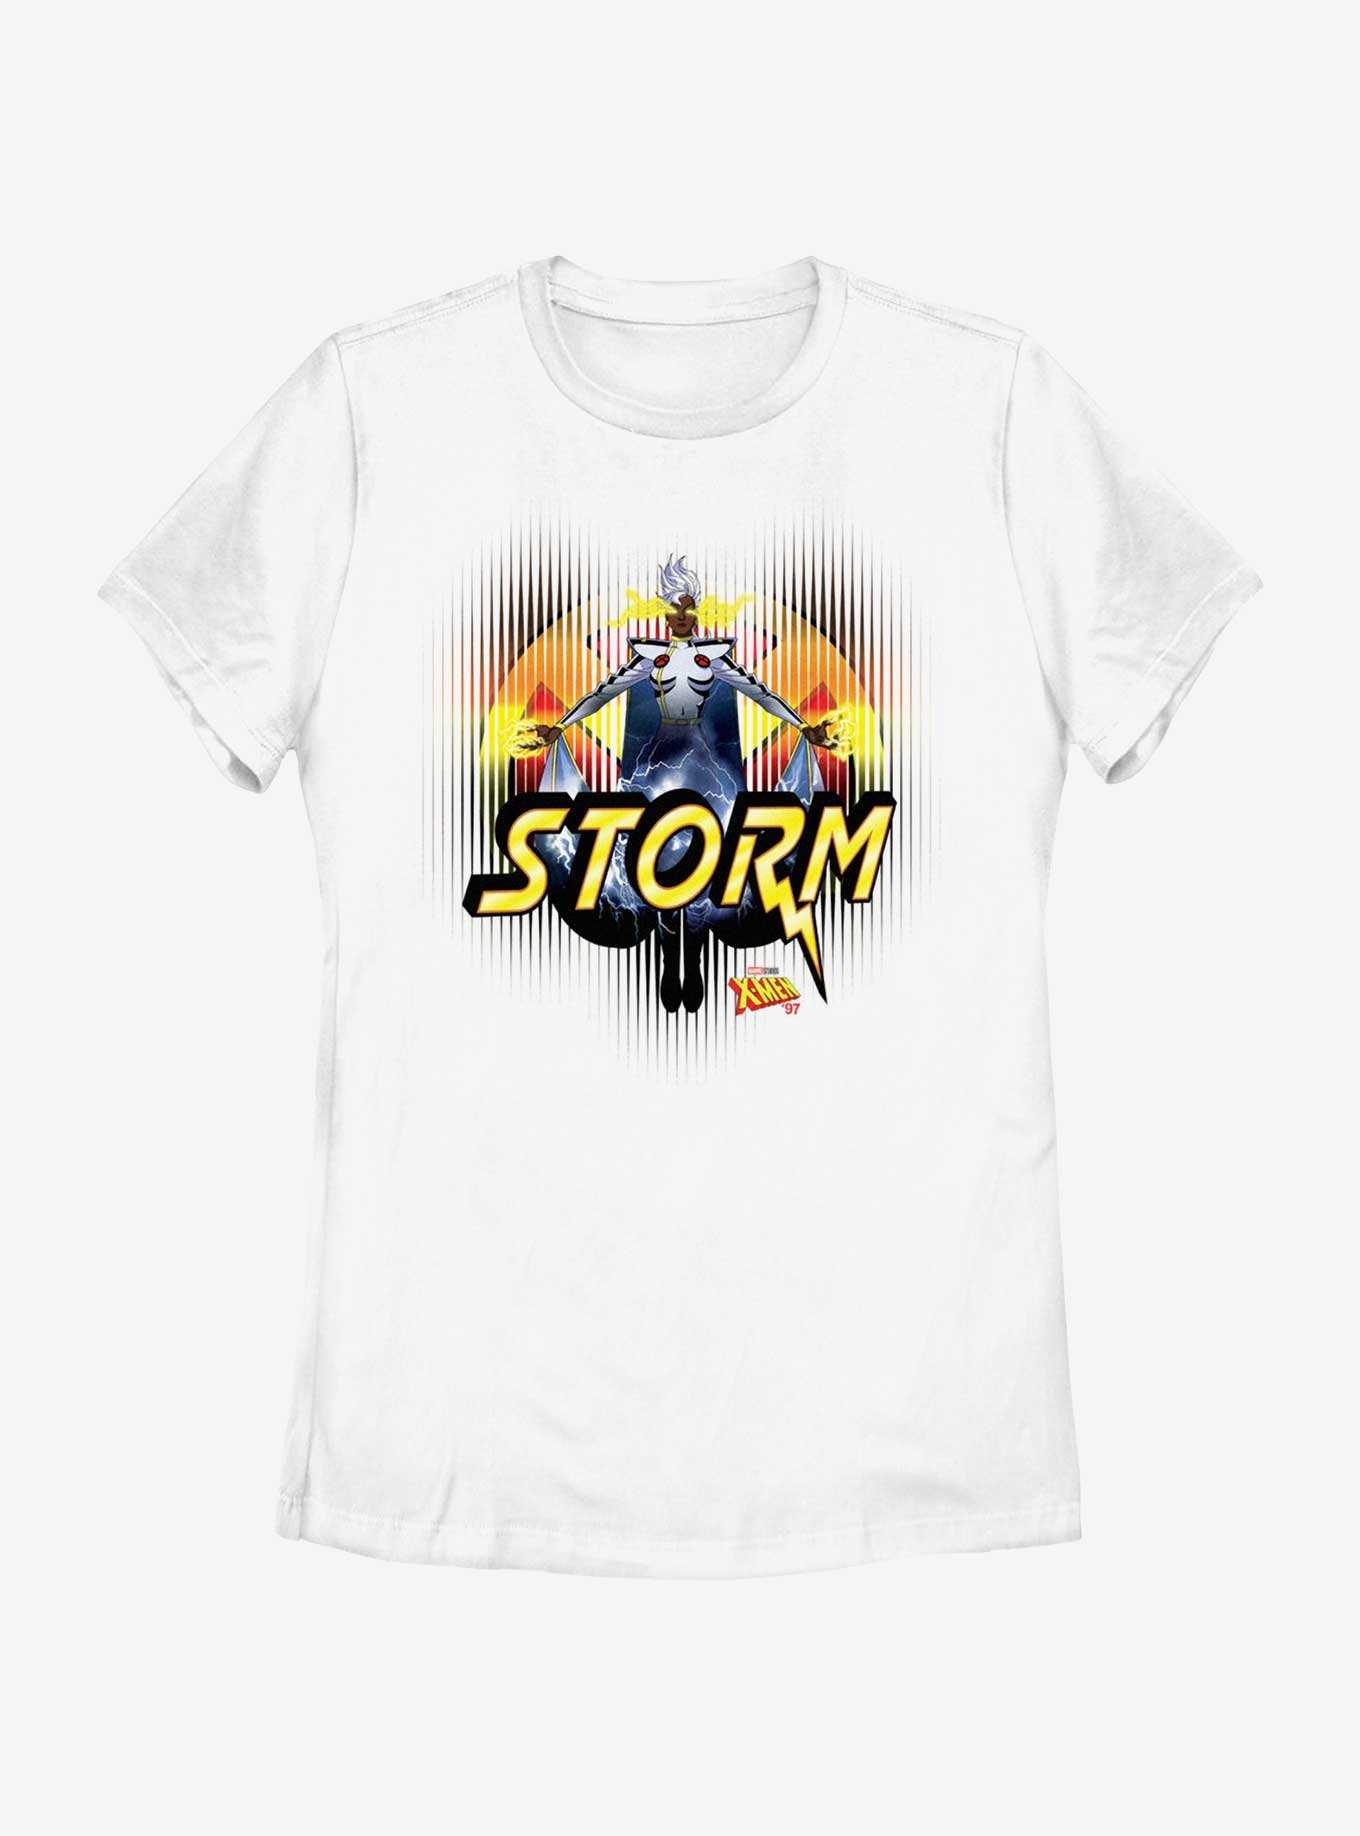 Marvel X-Men '97 Storm Omega Level Threat Womens T-Shirt, , hi-res